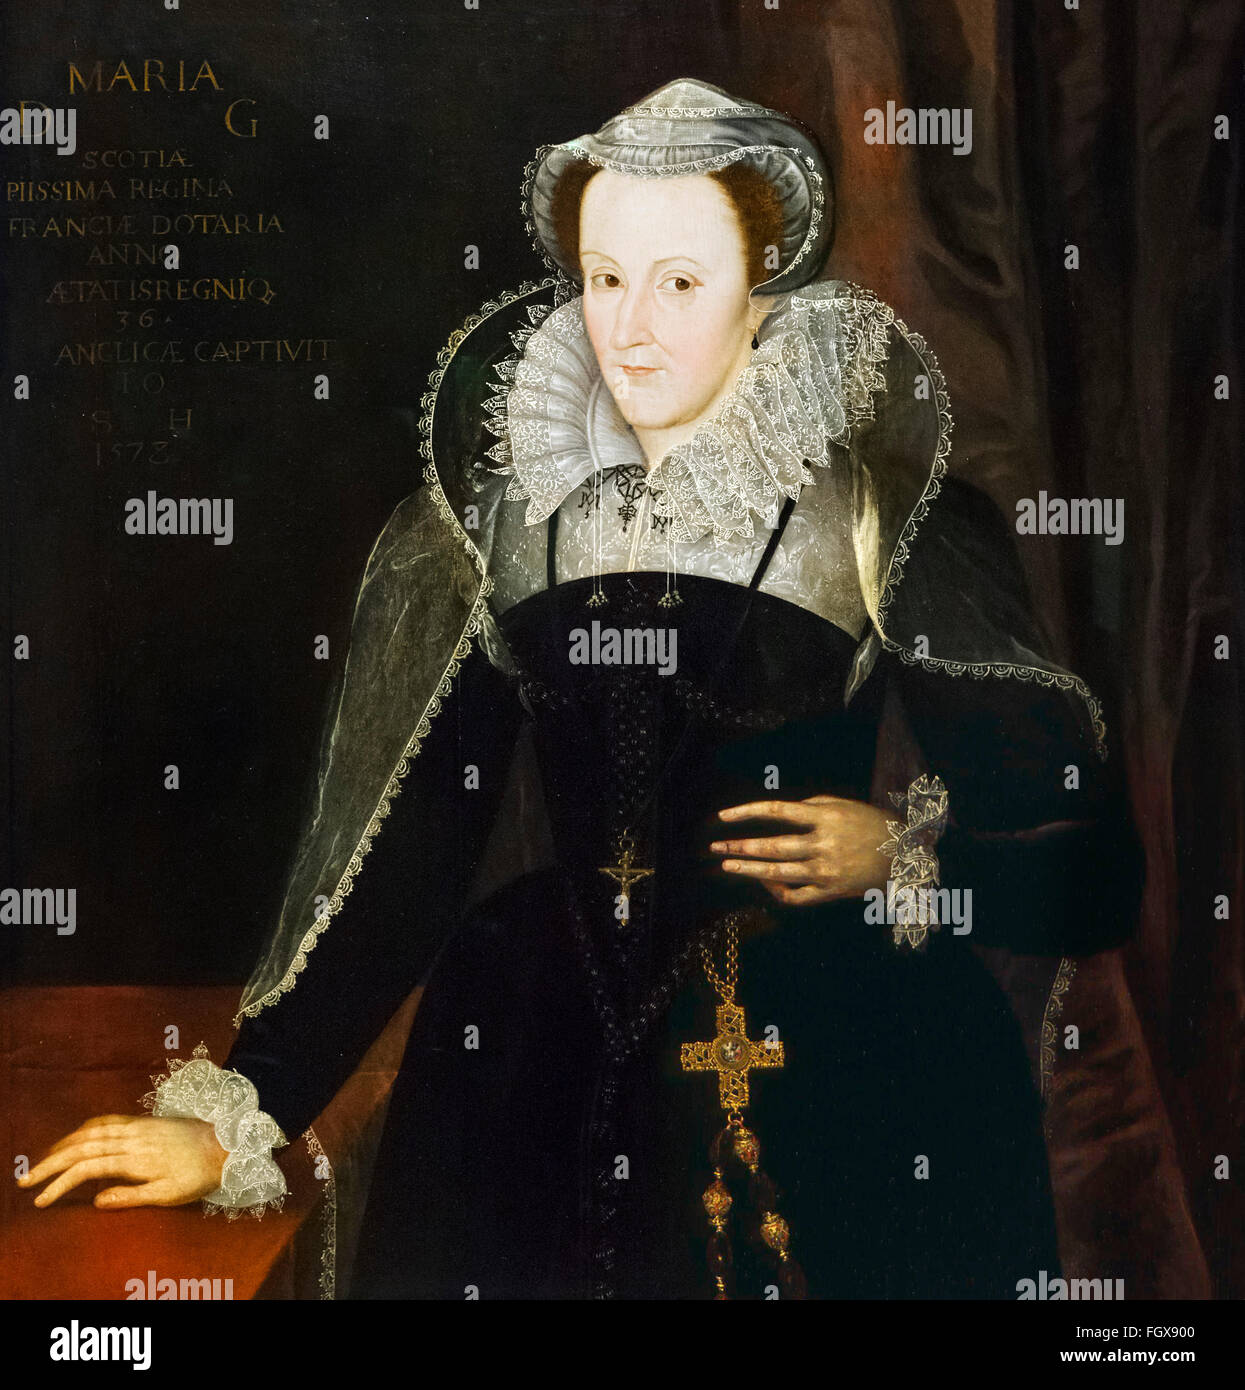 Marie, Reine des Écossais (1542-1587). Nicholas Hilliard, portrait après la fin du 16e siècle Banque D'Images